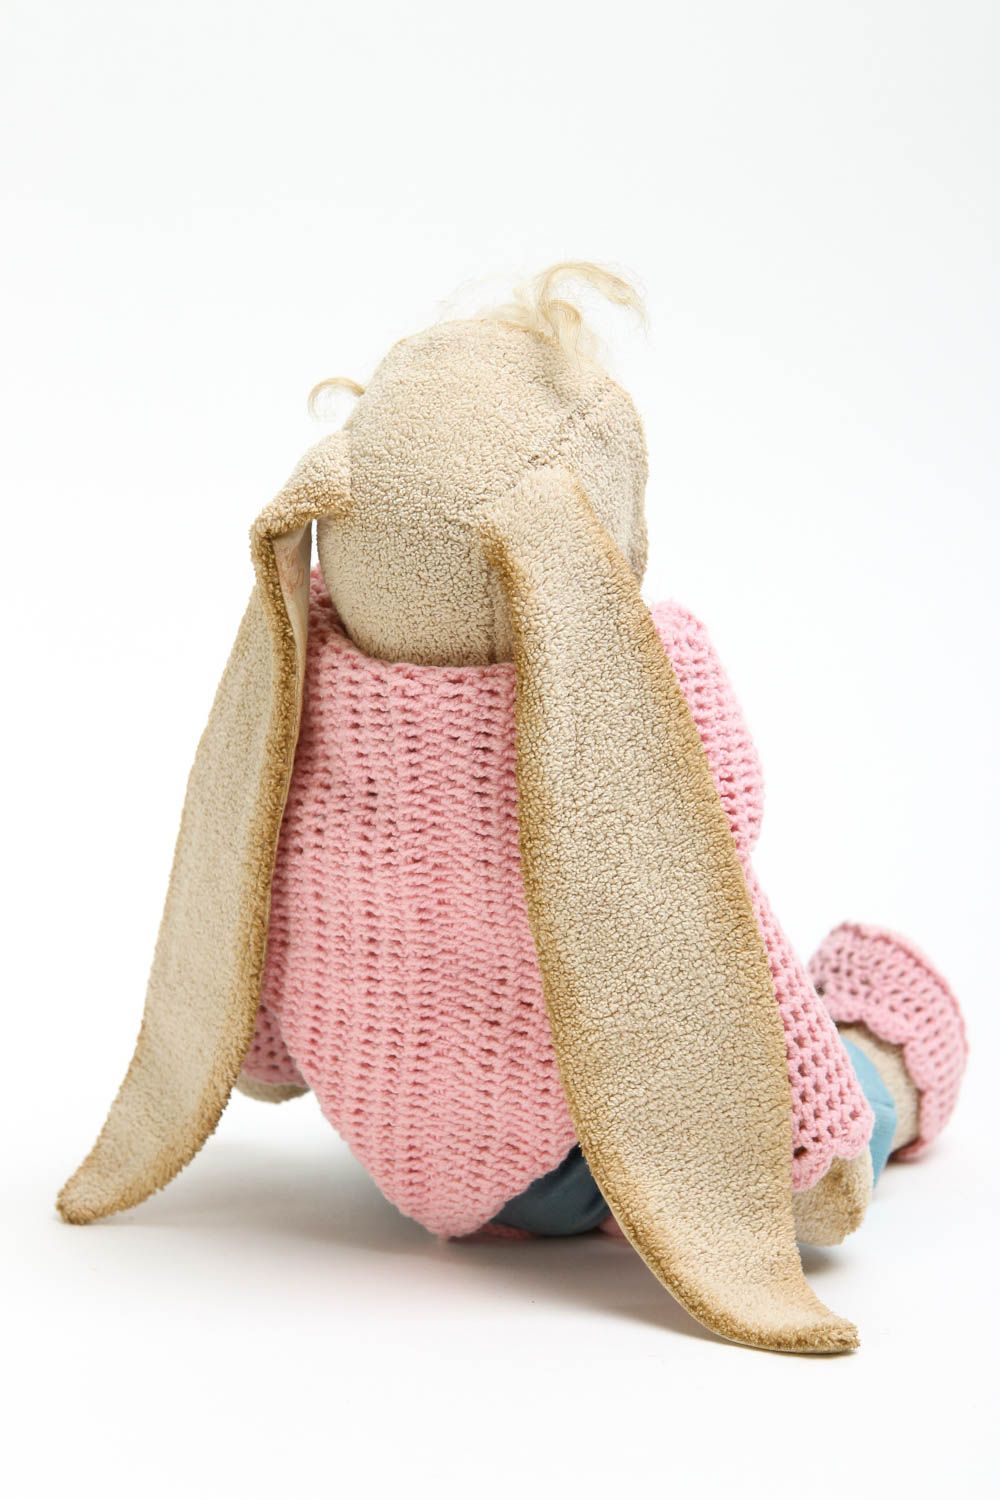 Puppe handgemacht Design Puppe mit Ohren Geschenk Idee Haus Dekoration aus Stoff foto 4